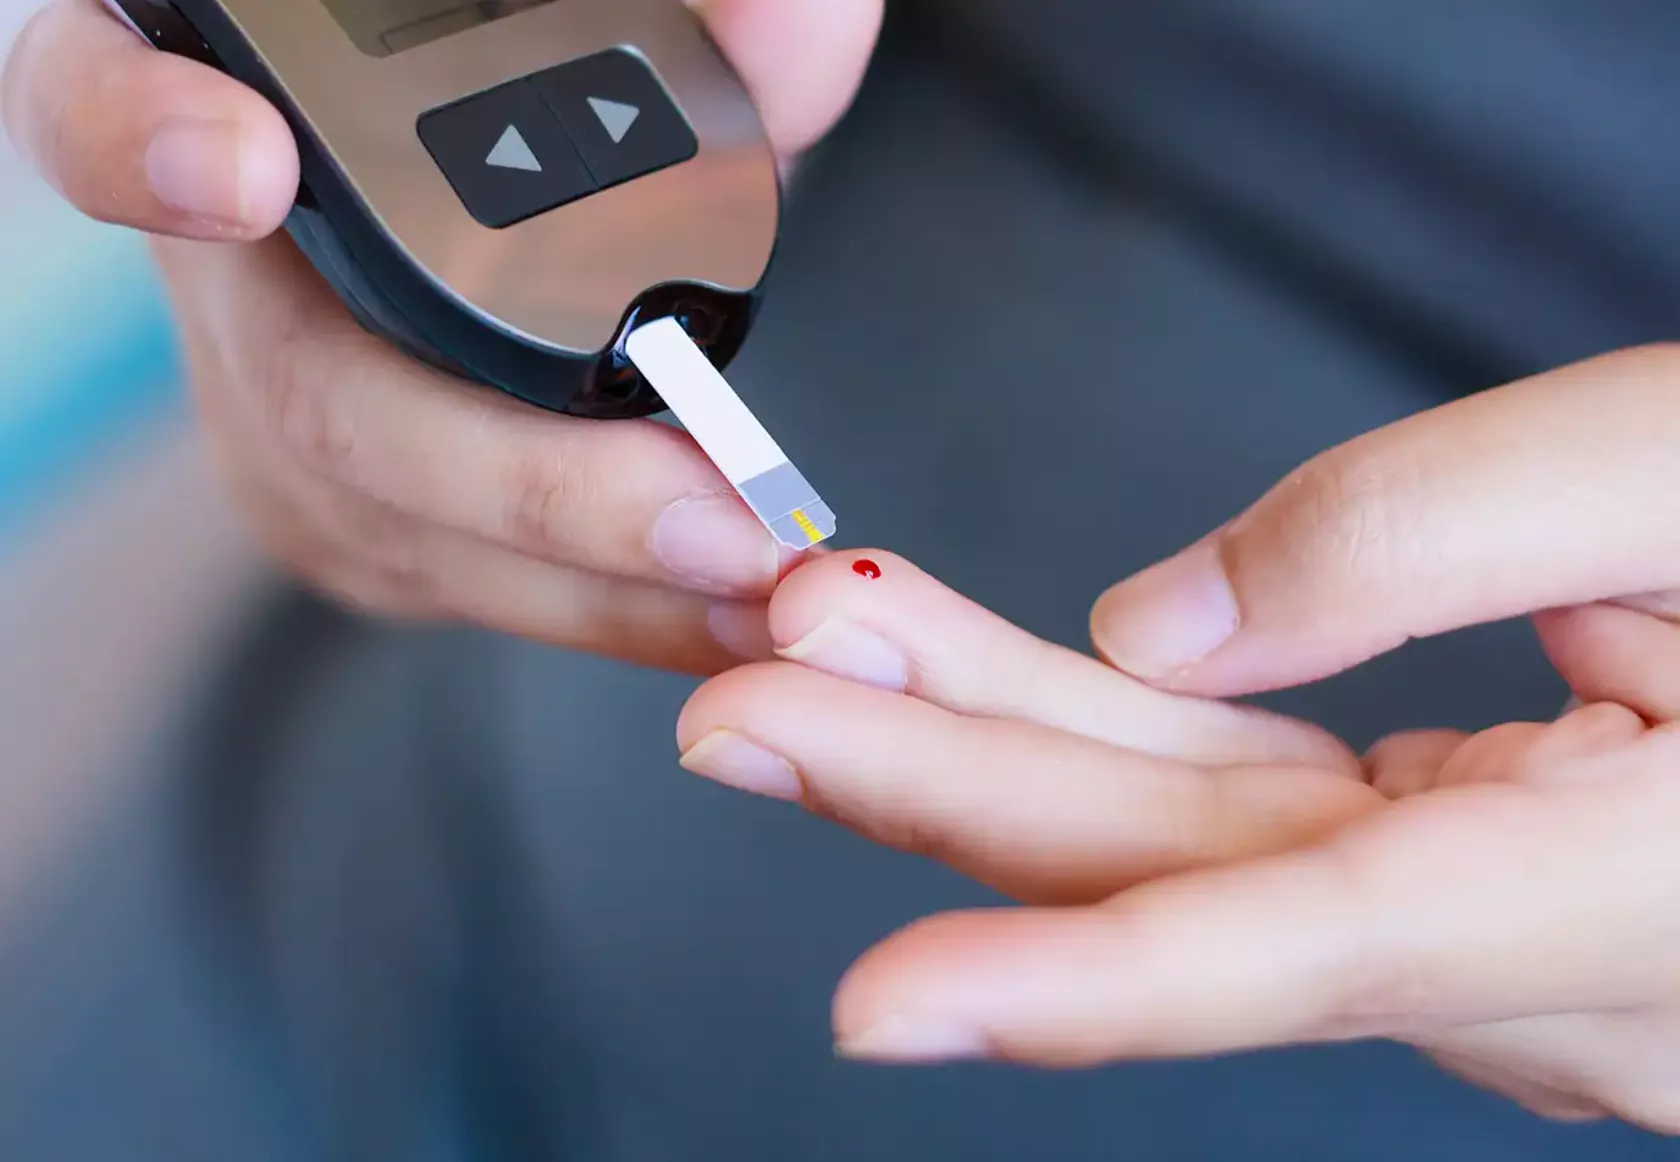 Blutglukose-Test bei Diabetes, Blutstropfen auf dem Finger und Testgerät mit Teststreifen